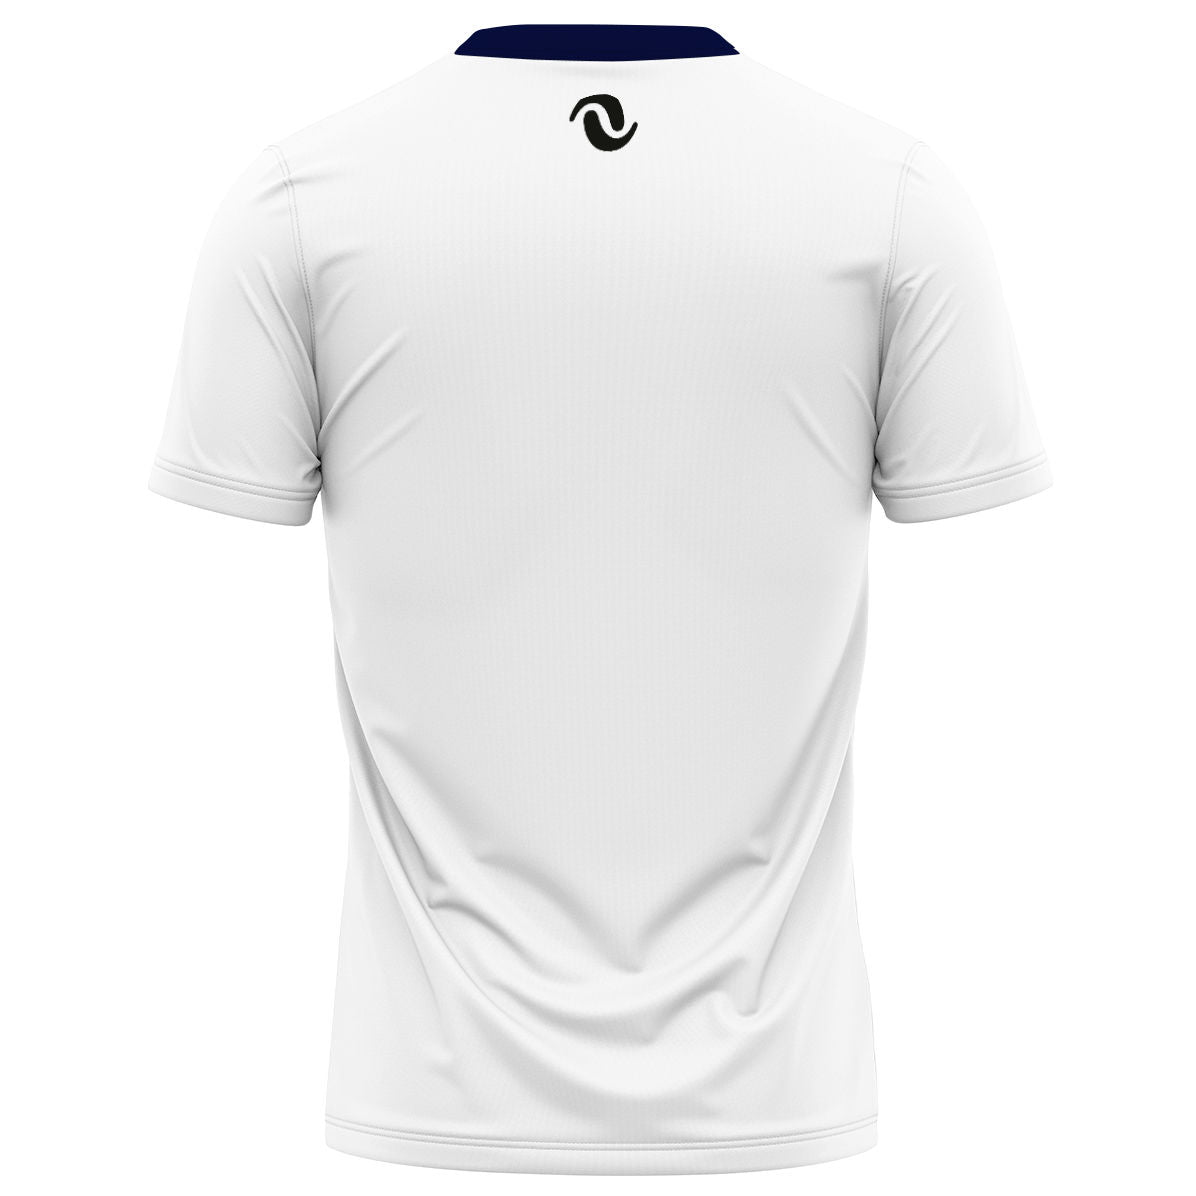 NV Coyoacán - Performance Shirt